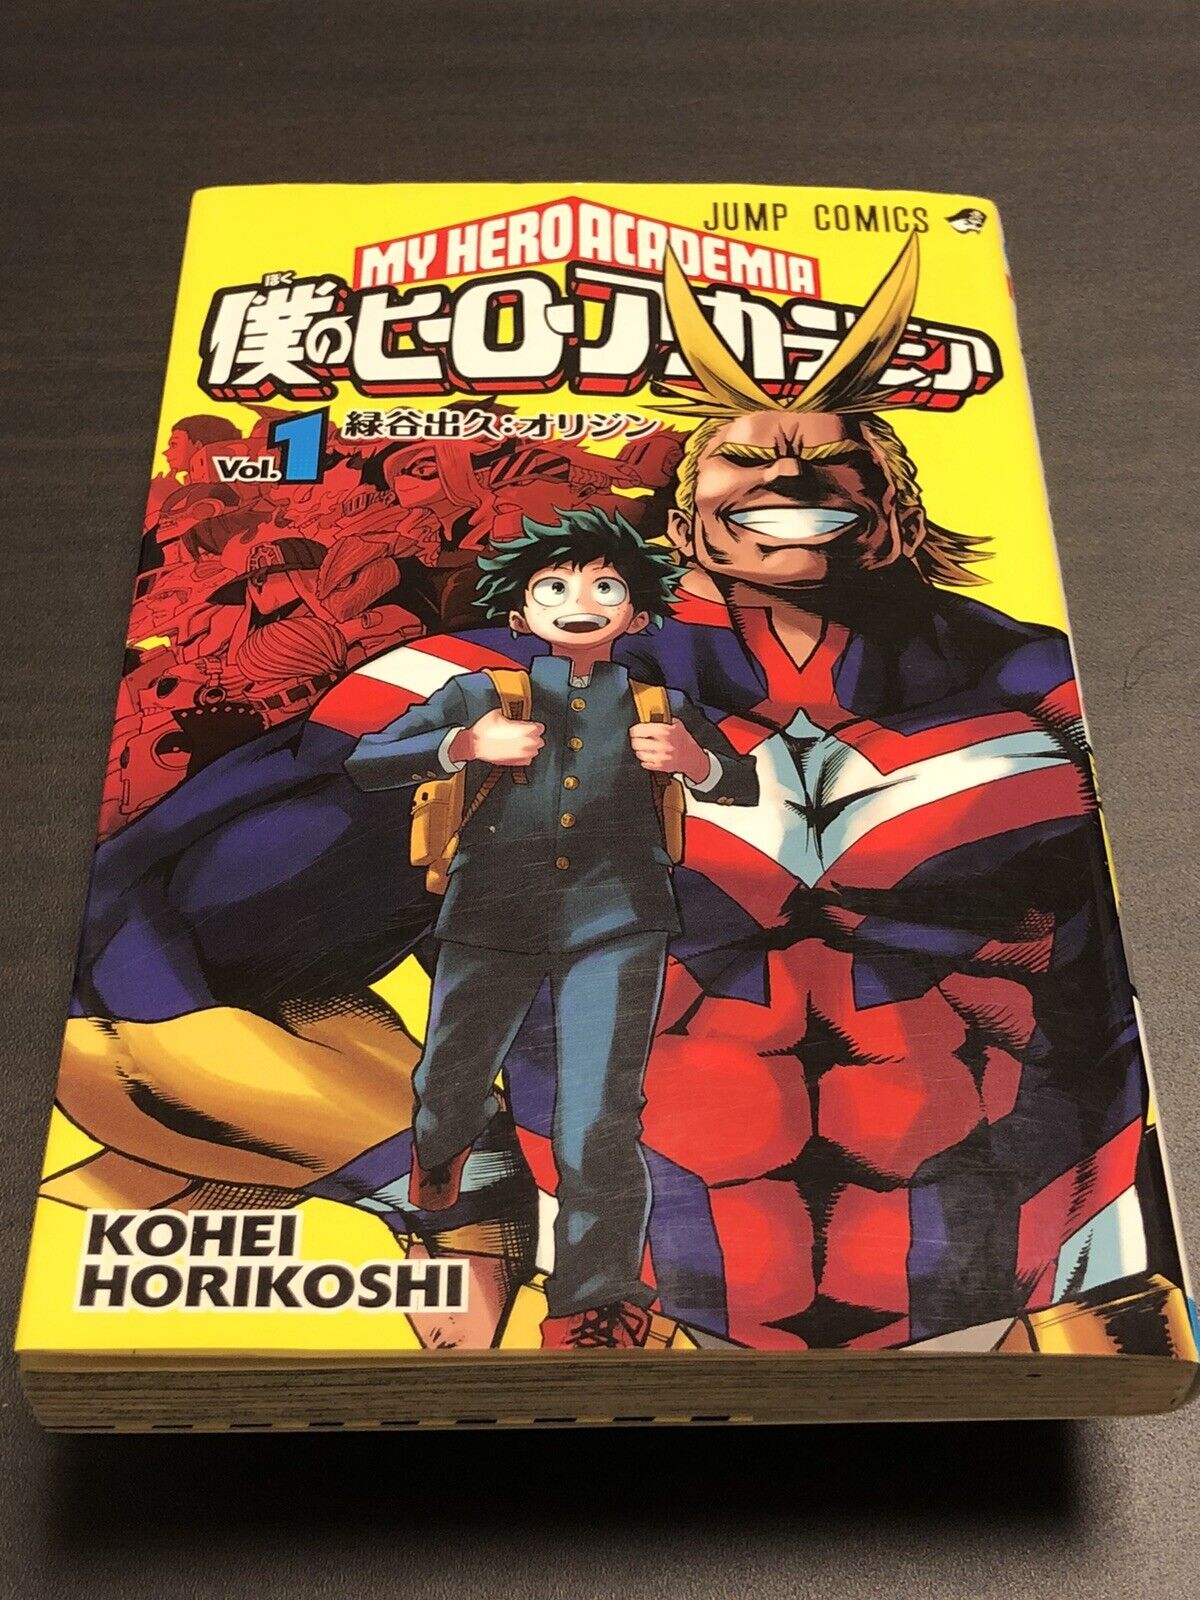 RARE My Hero Academia Vol.1 2014 1st Print Edition Anime Manga Comic Japan